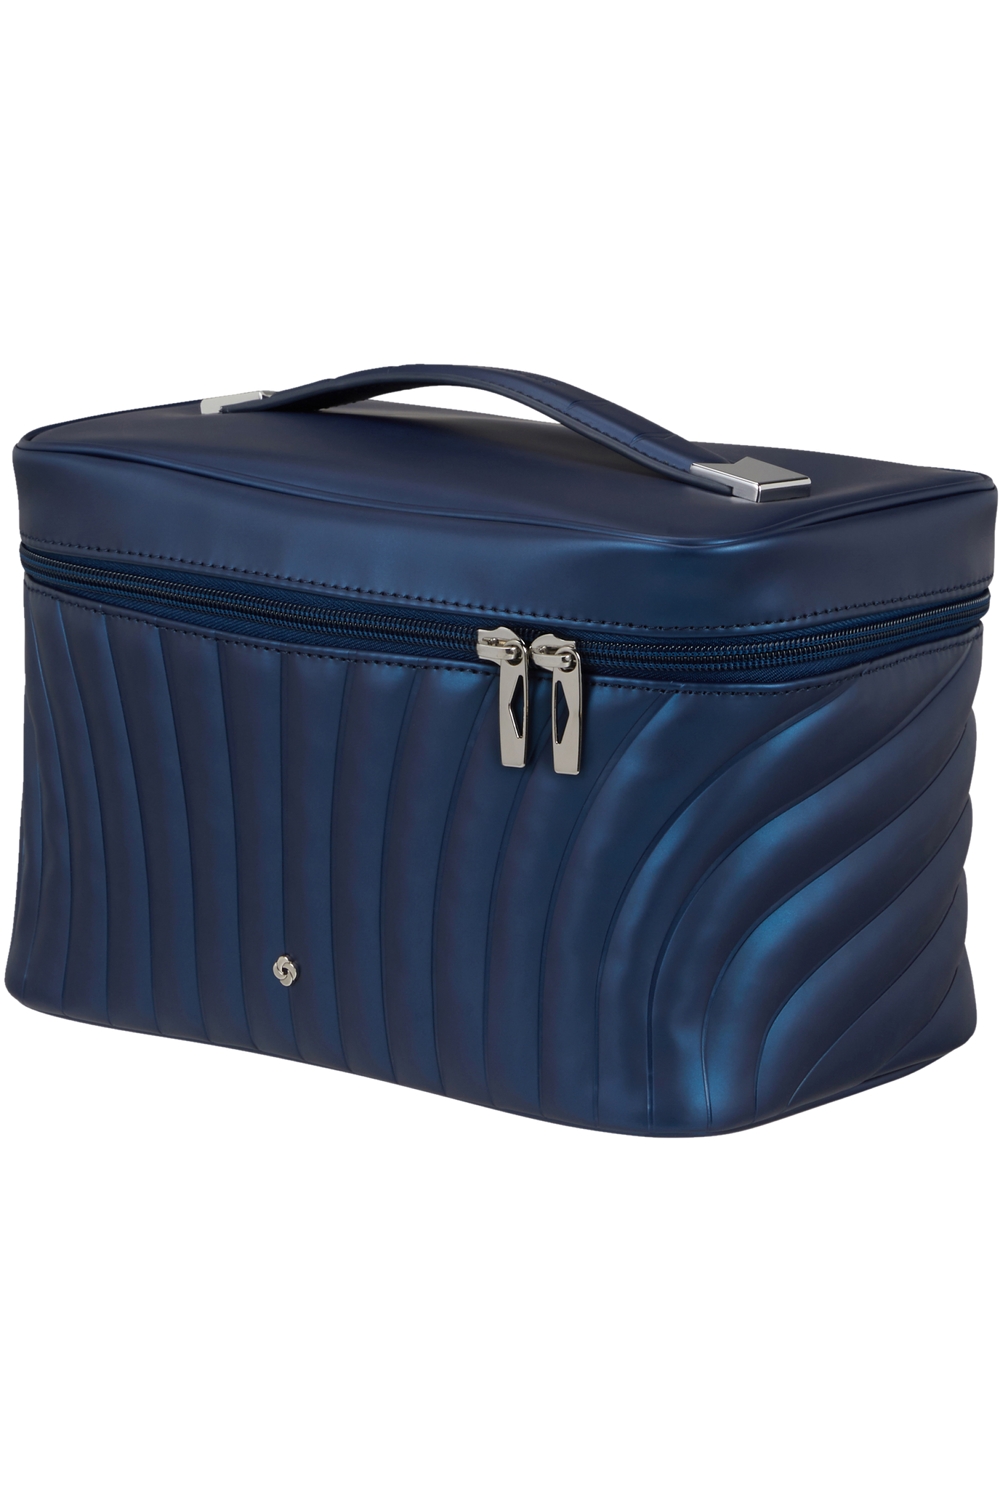 SAMSONITE Kosmetická taška C-Lite Midnight Blue, 24 x 14 x 16 (142674/1549)